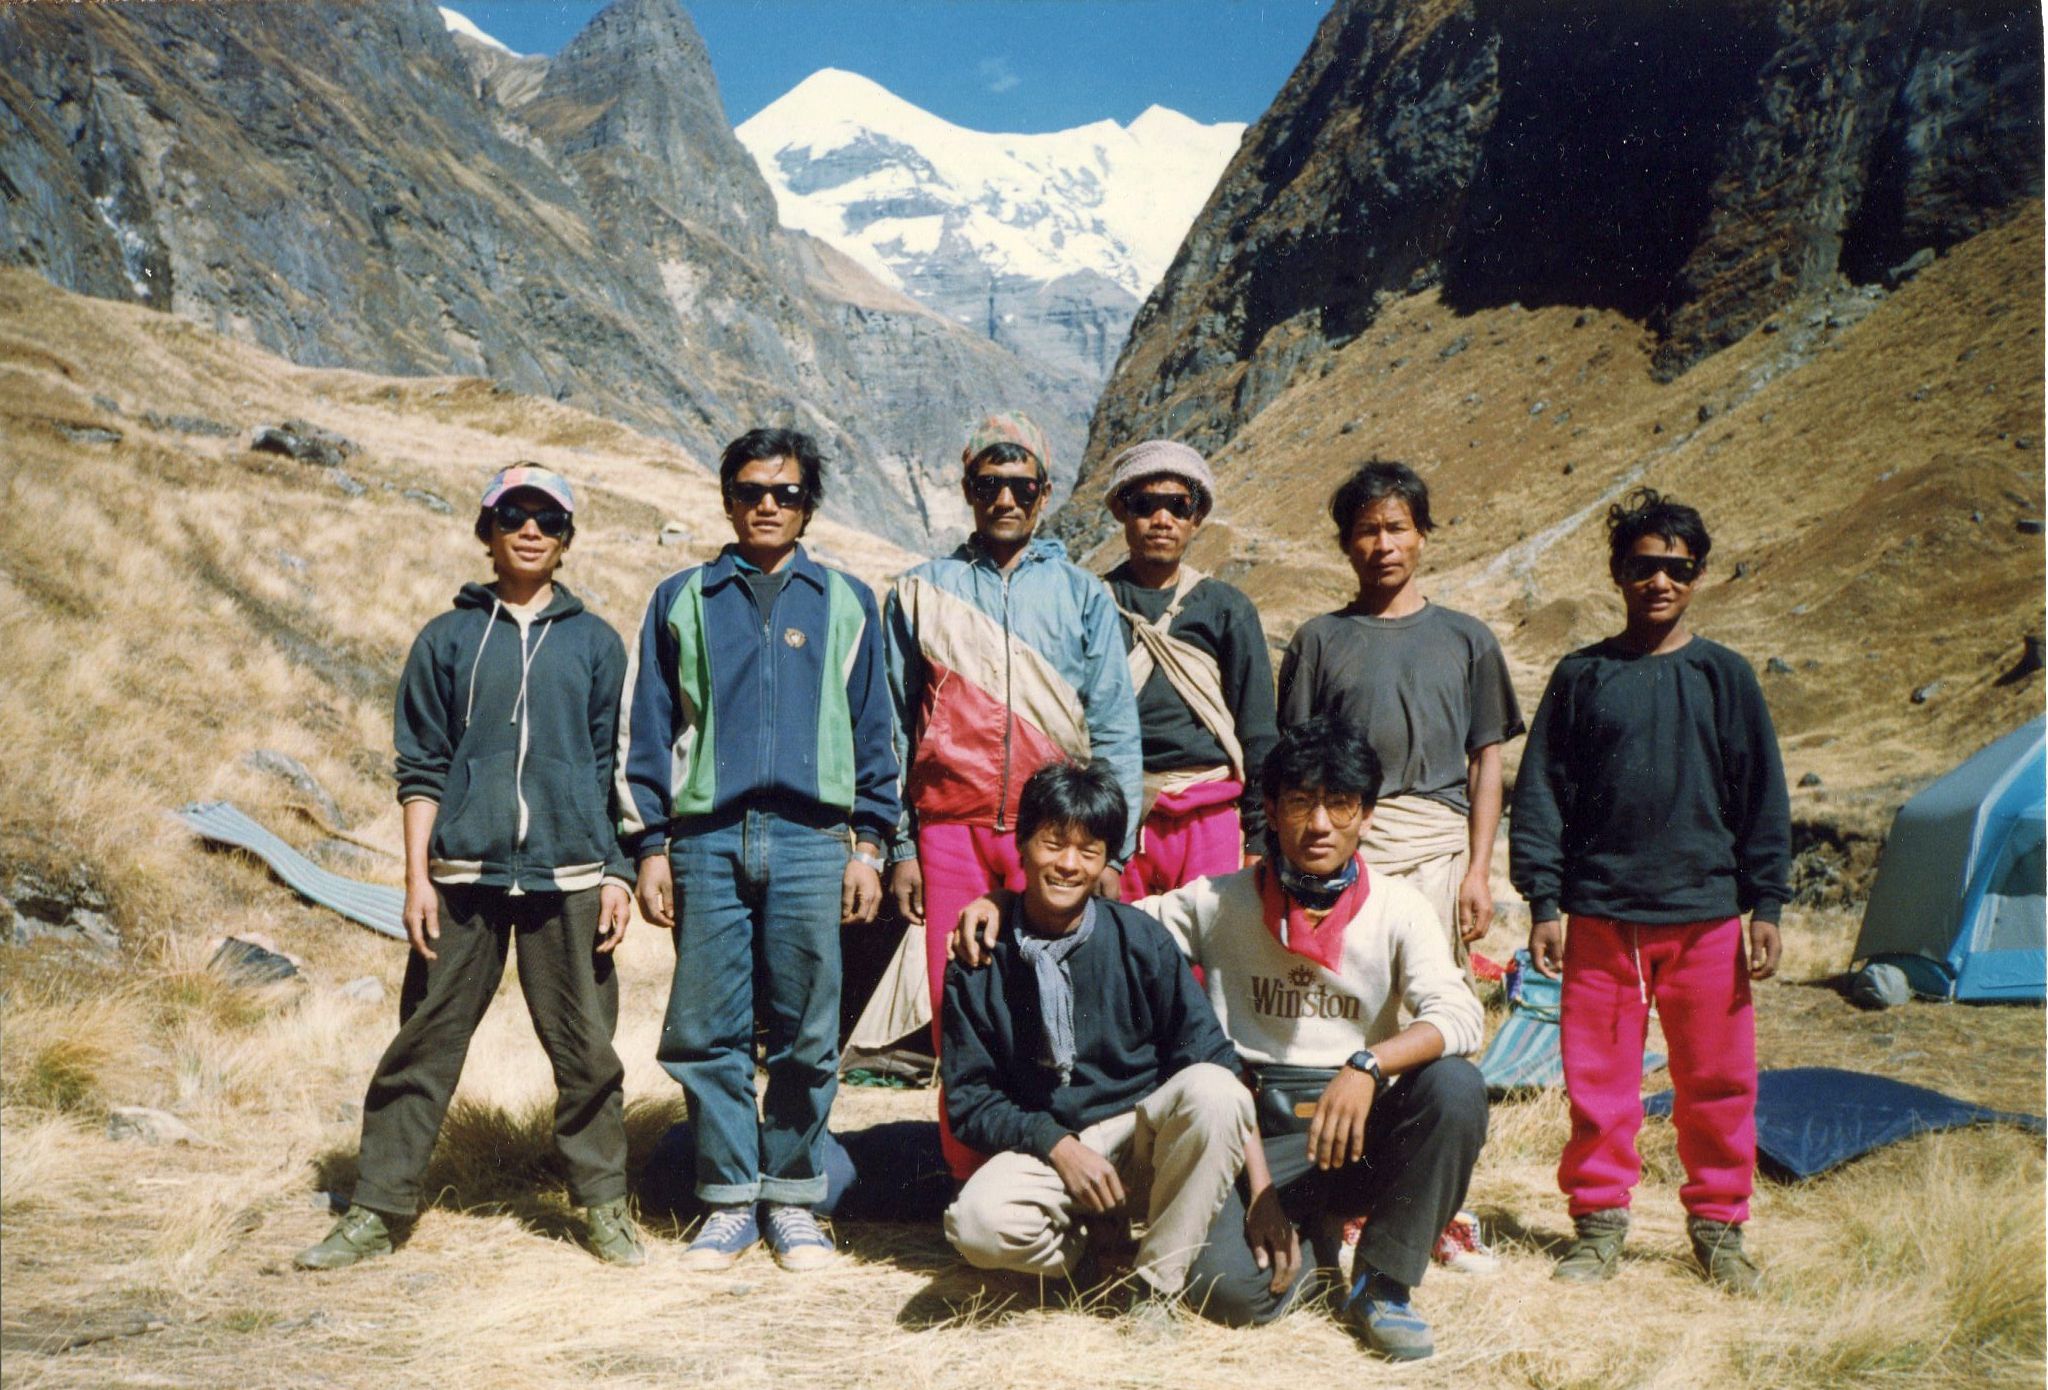 Trekking Crew on approach to Chonbarden Glacier